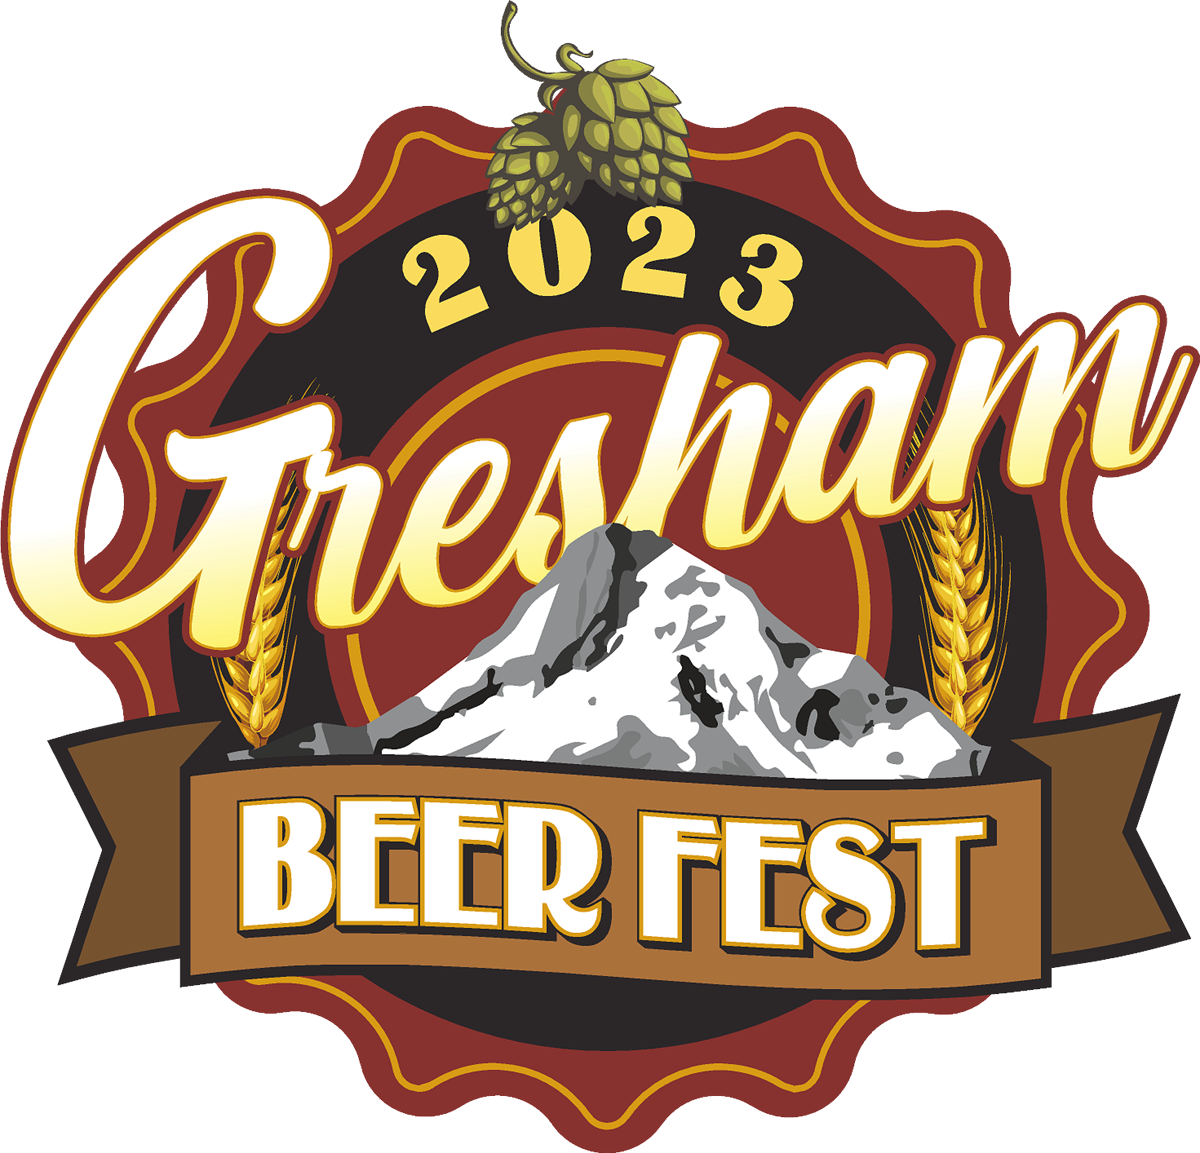 Gresham Beer Fest Nov 11, 2023 Gresham Area Events and Information